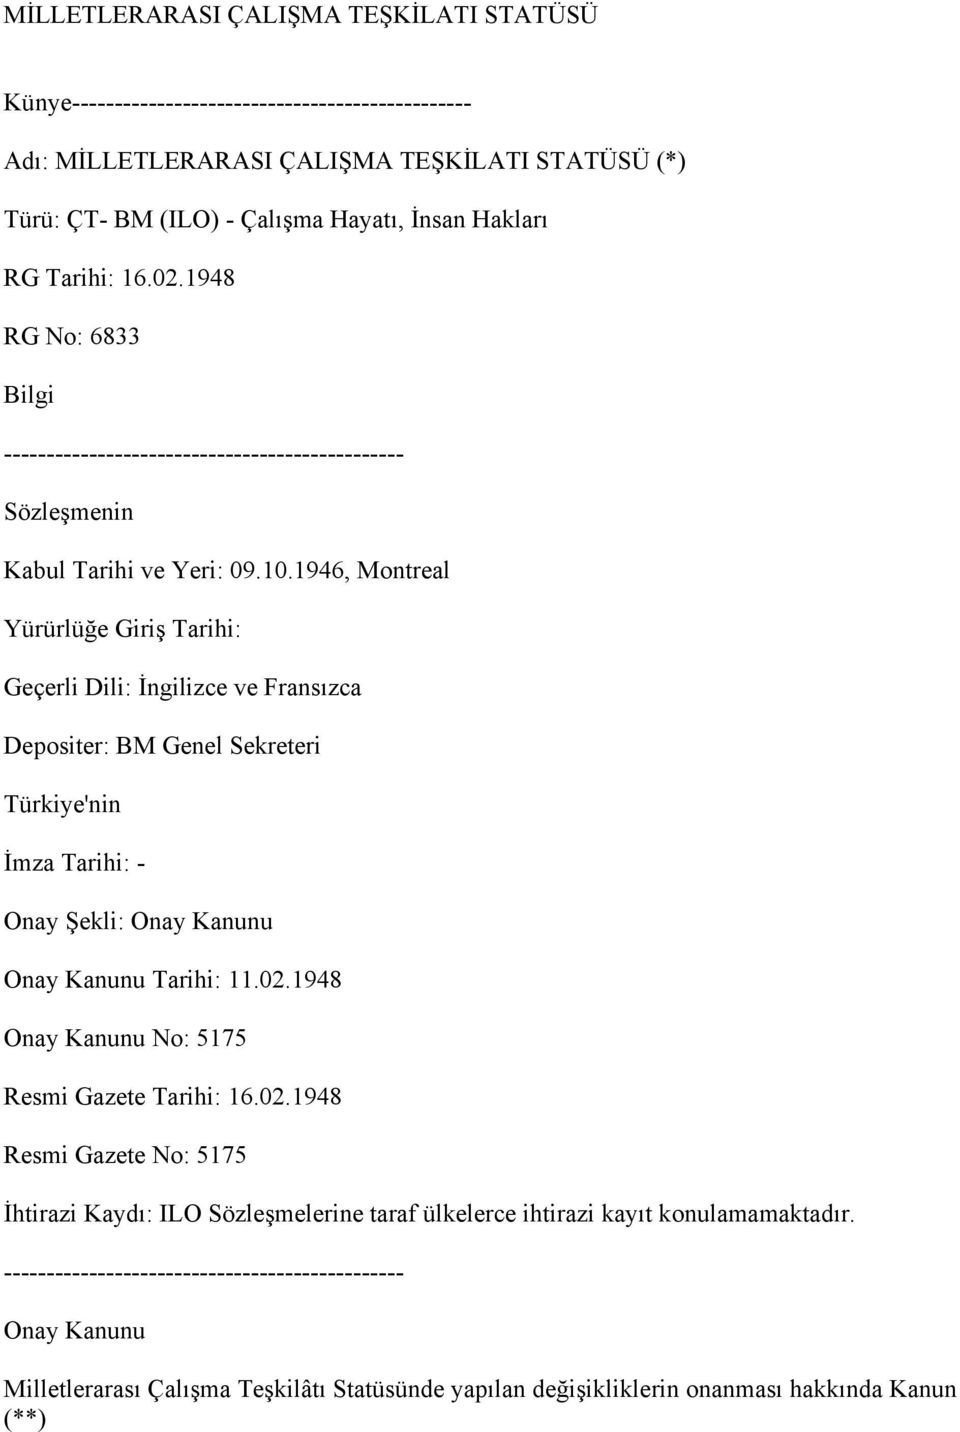 1946, Montreal Yürürlüğe Giriş Tarihi: Geçerli Dili: İngilizce ve Fransızca Depositer: BM Genel Sekreteri Türkiye'nin İmza Tarihi: - Onay Şekli: Onay Kanunu Onay Kanunu Tarihi: 11.02.